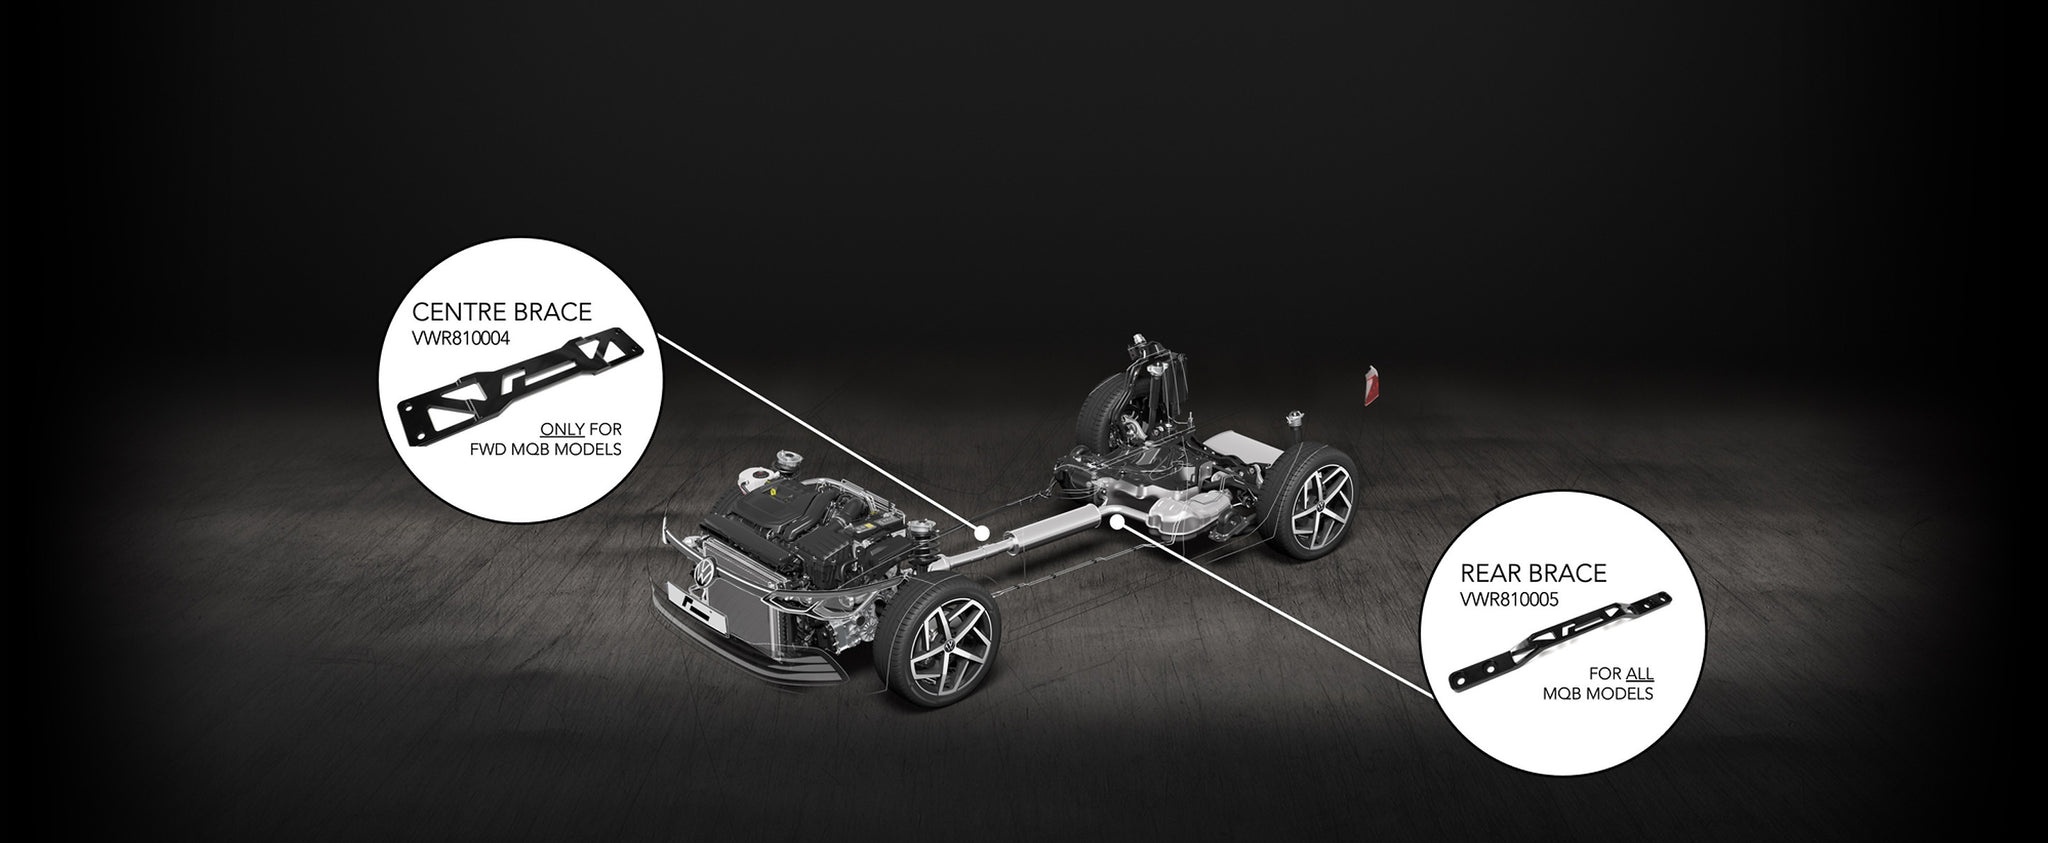 RacingLine - Rear Body Brace MQB Models